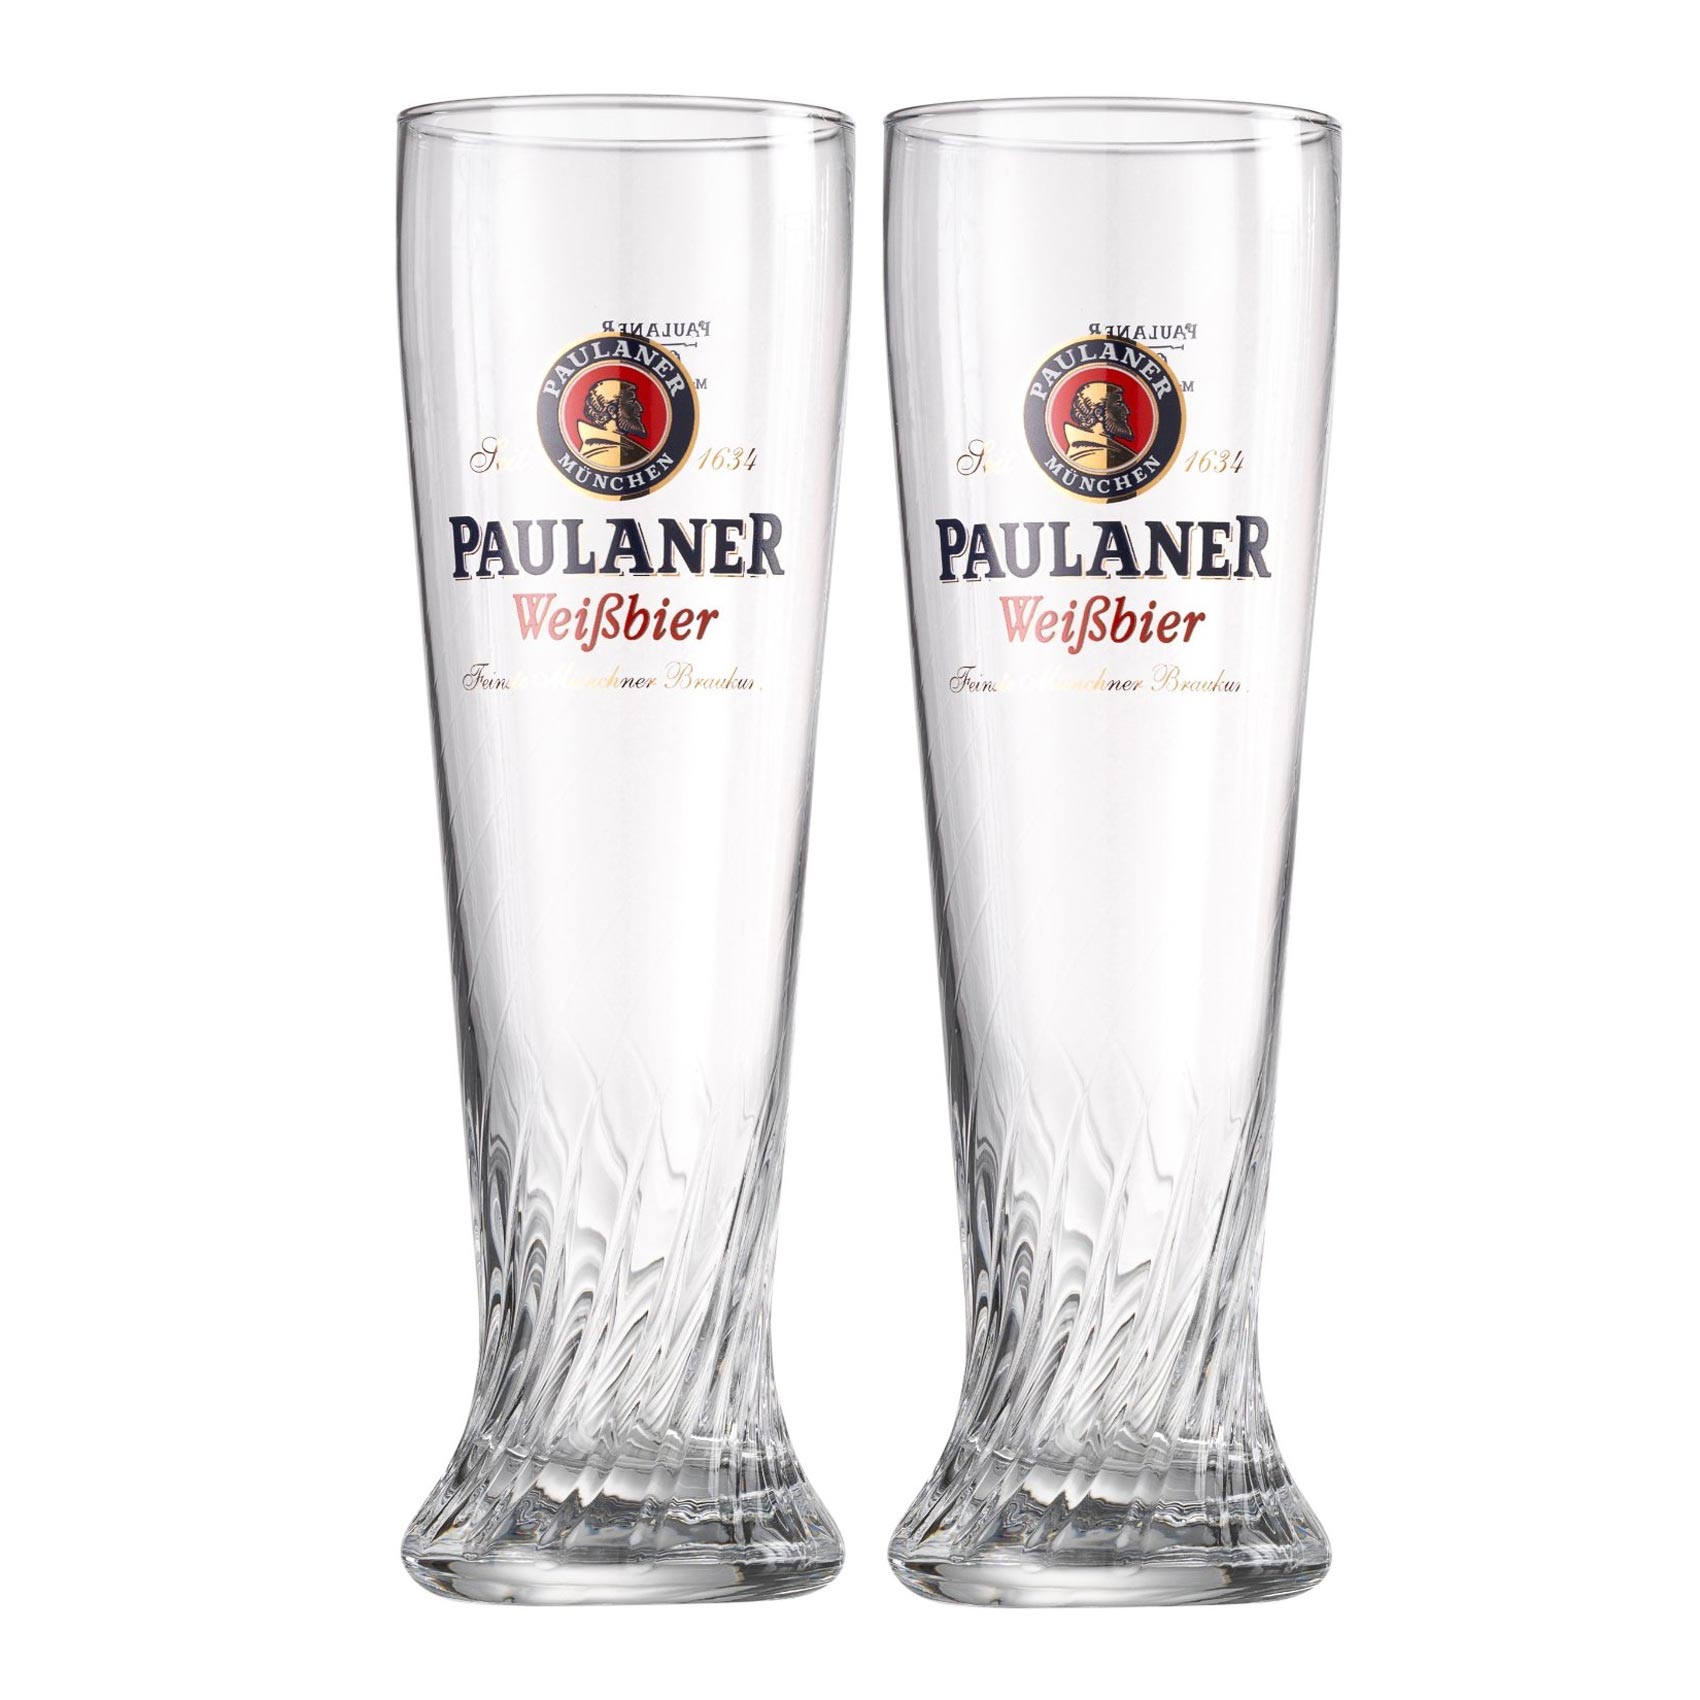 Weizenbierglas Paulaner 0.5l - 2er Set Biergläser mit Logo